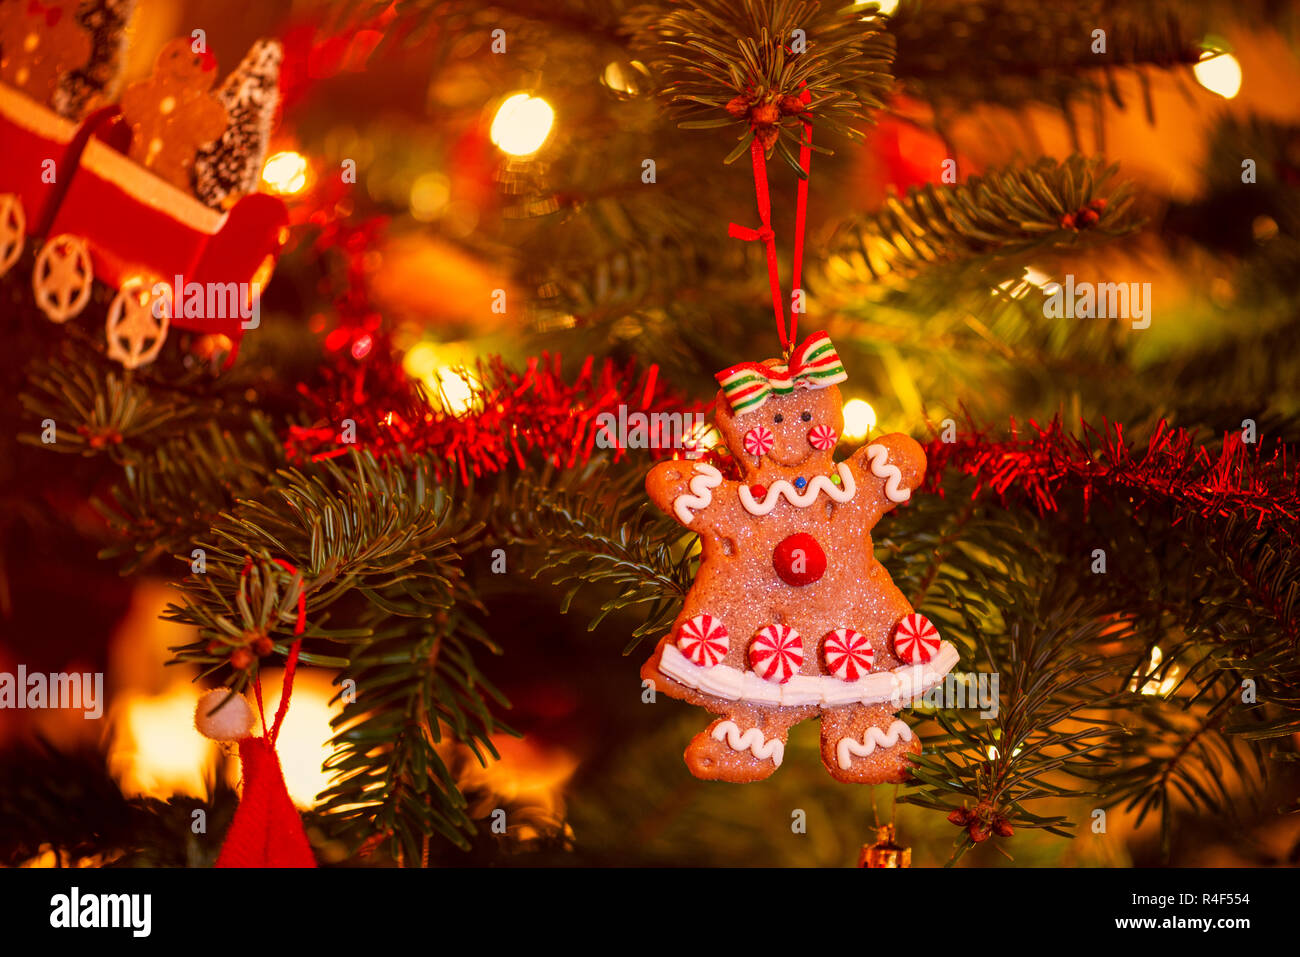 Gingerbread Cookie accroché dans l'arbre de Noël Banque D'Images